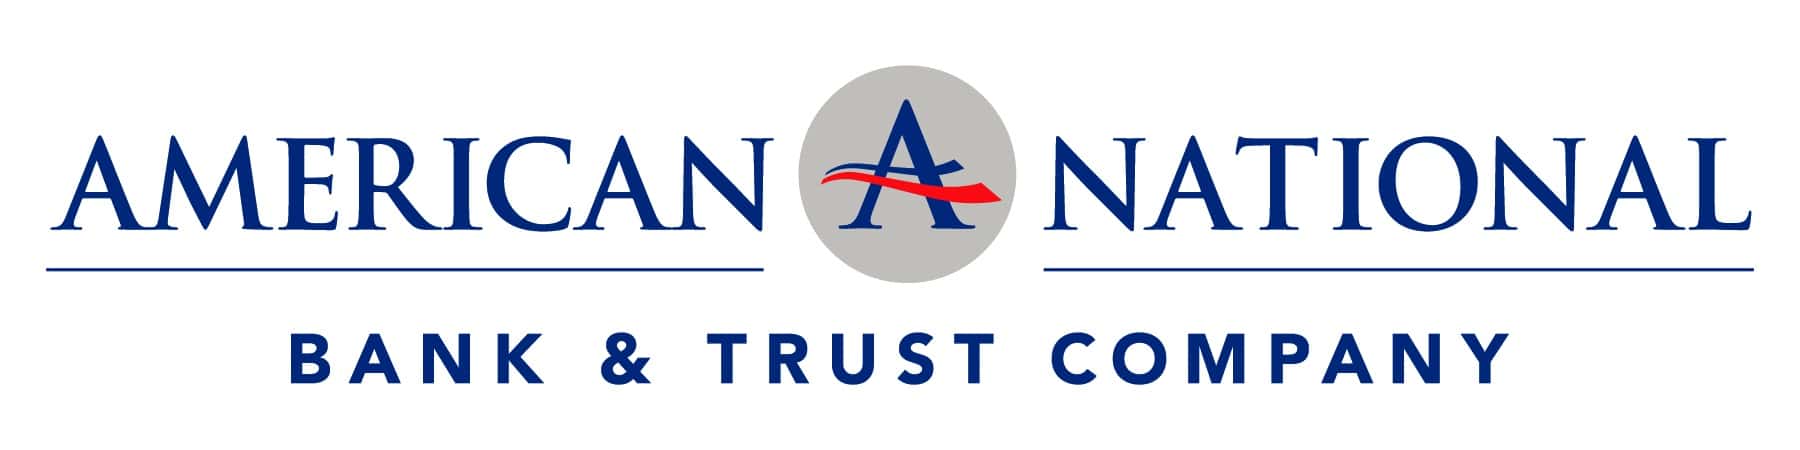 Logotipo nacional estadounidense